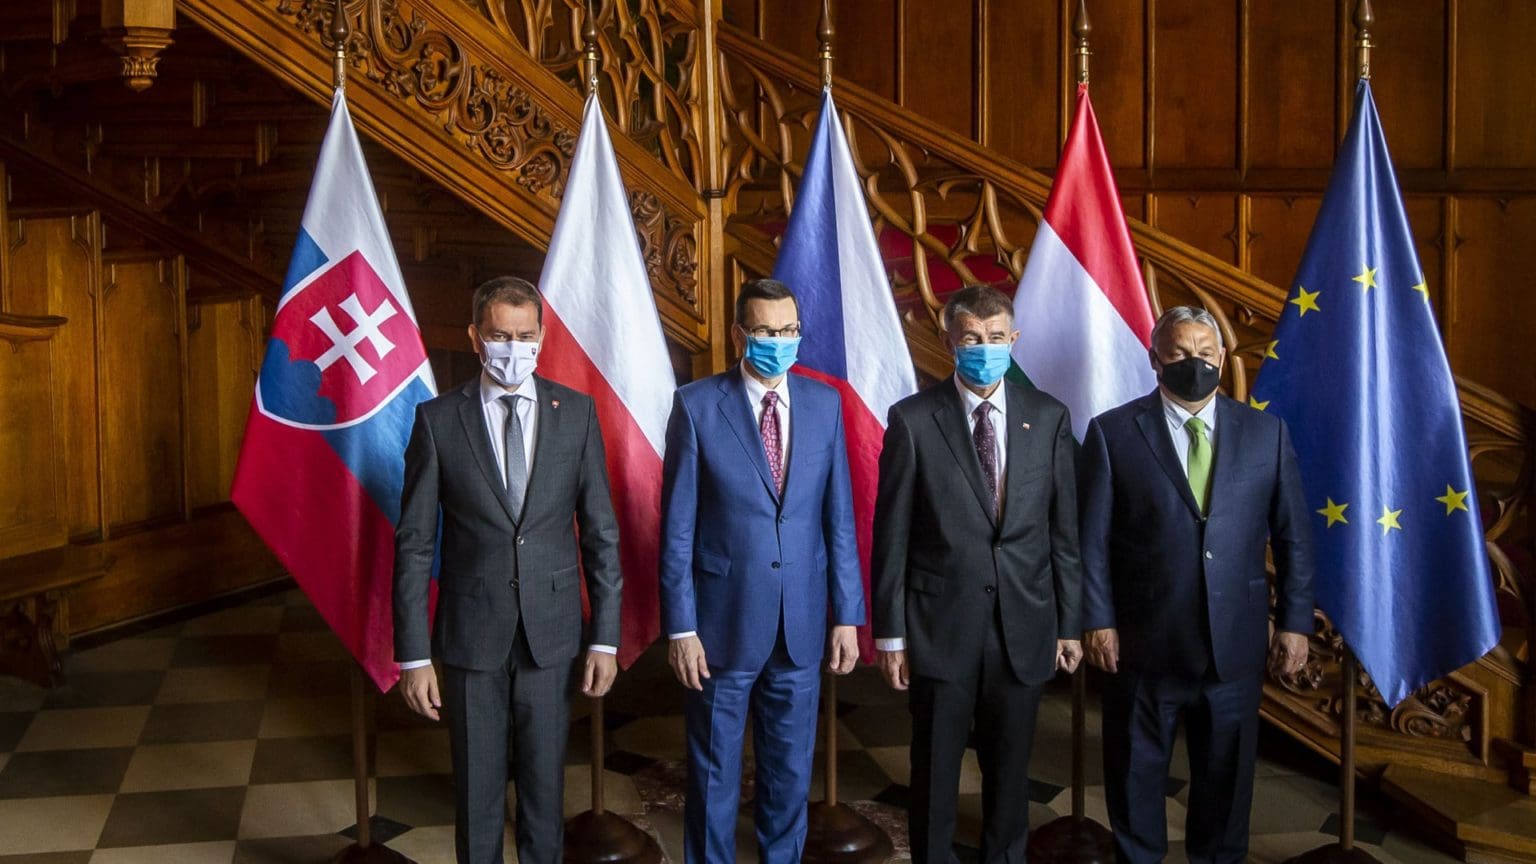 Hungary’s 2021/22 V4 Presidency: “Recharging Europe”